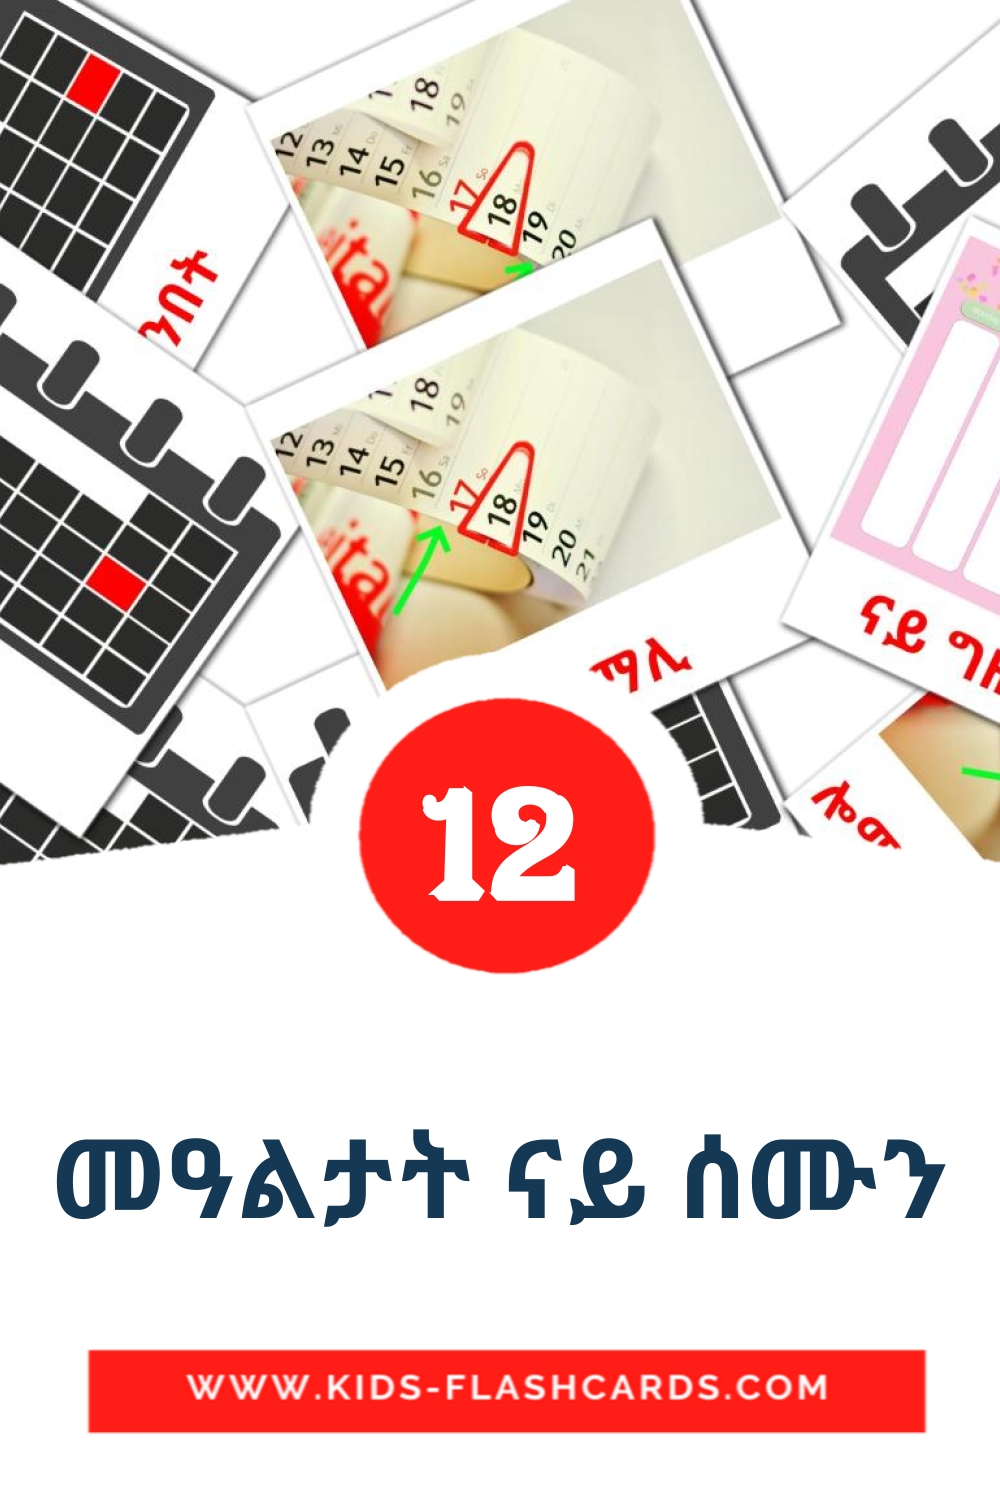 12 tarjetas didacticas de መዓልታት ናይ ሰሙን para el jardín de infancia en tigrigna(Eritrea)